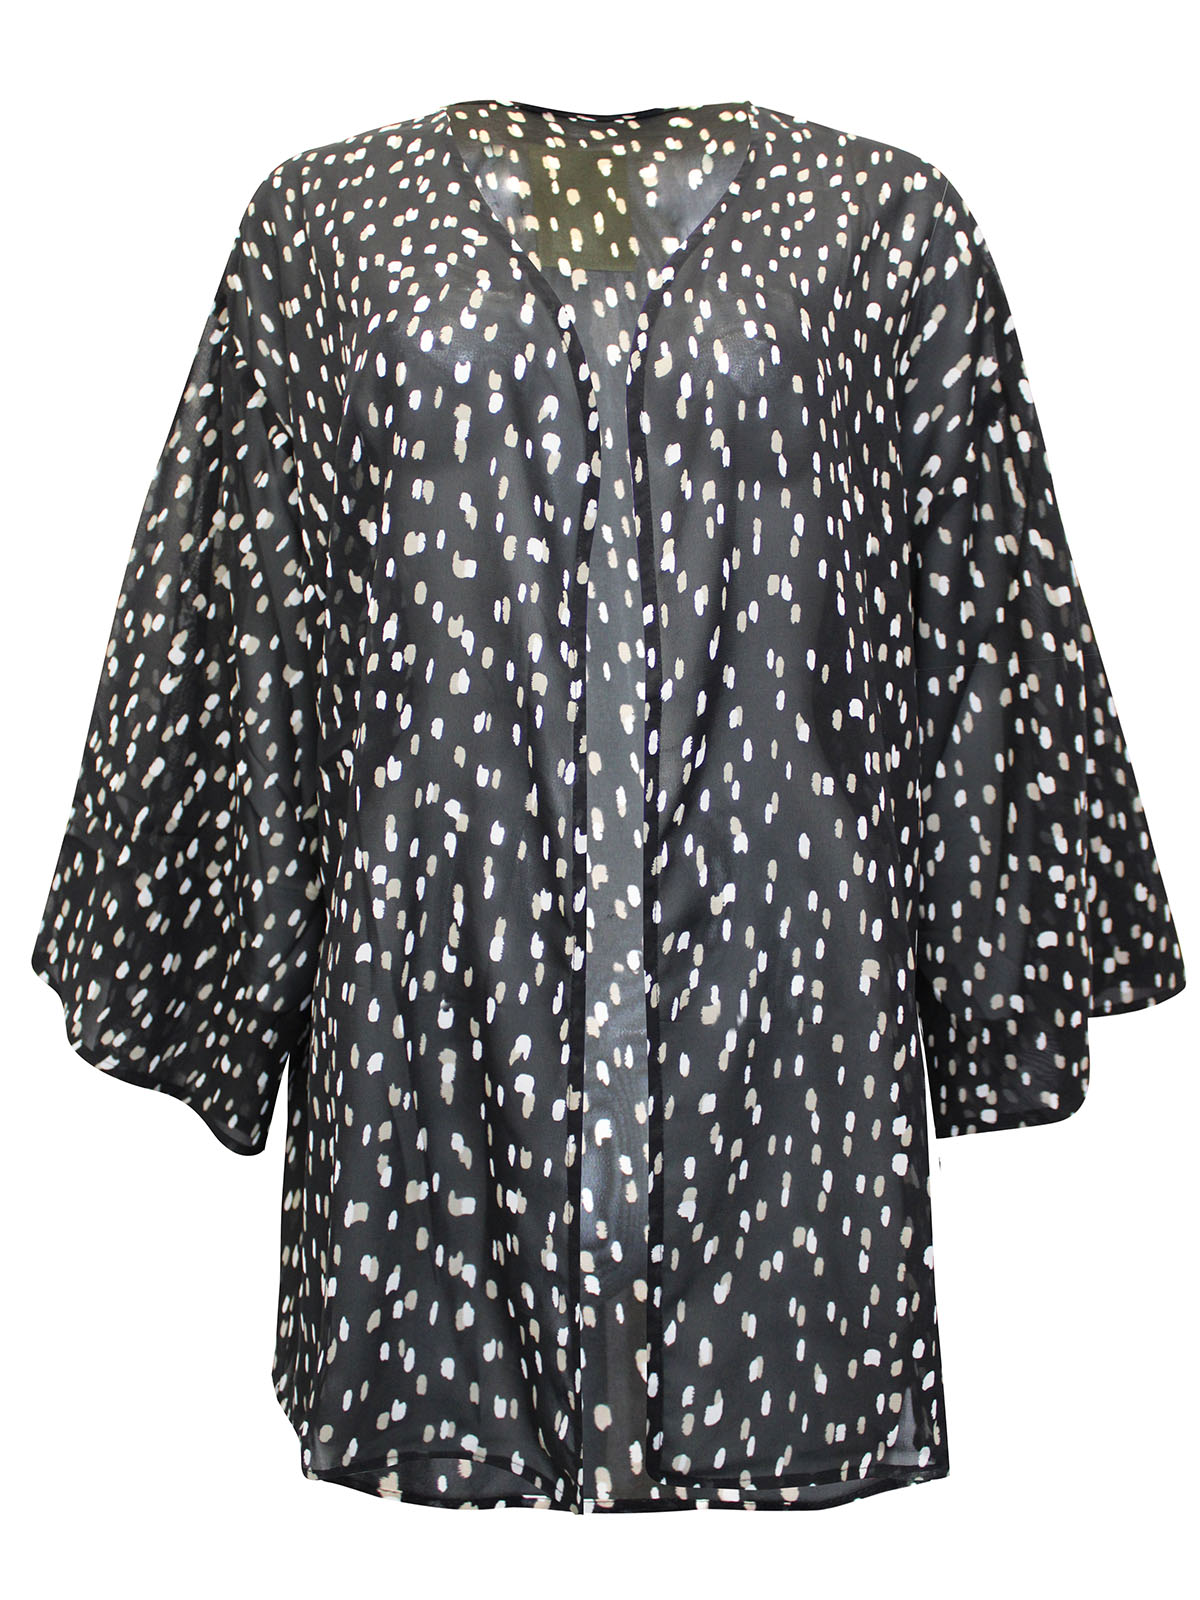 Capsule - - BLACK Printed Woven Kimono - Plus Size 16 to 24